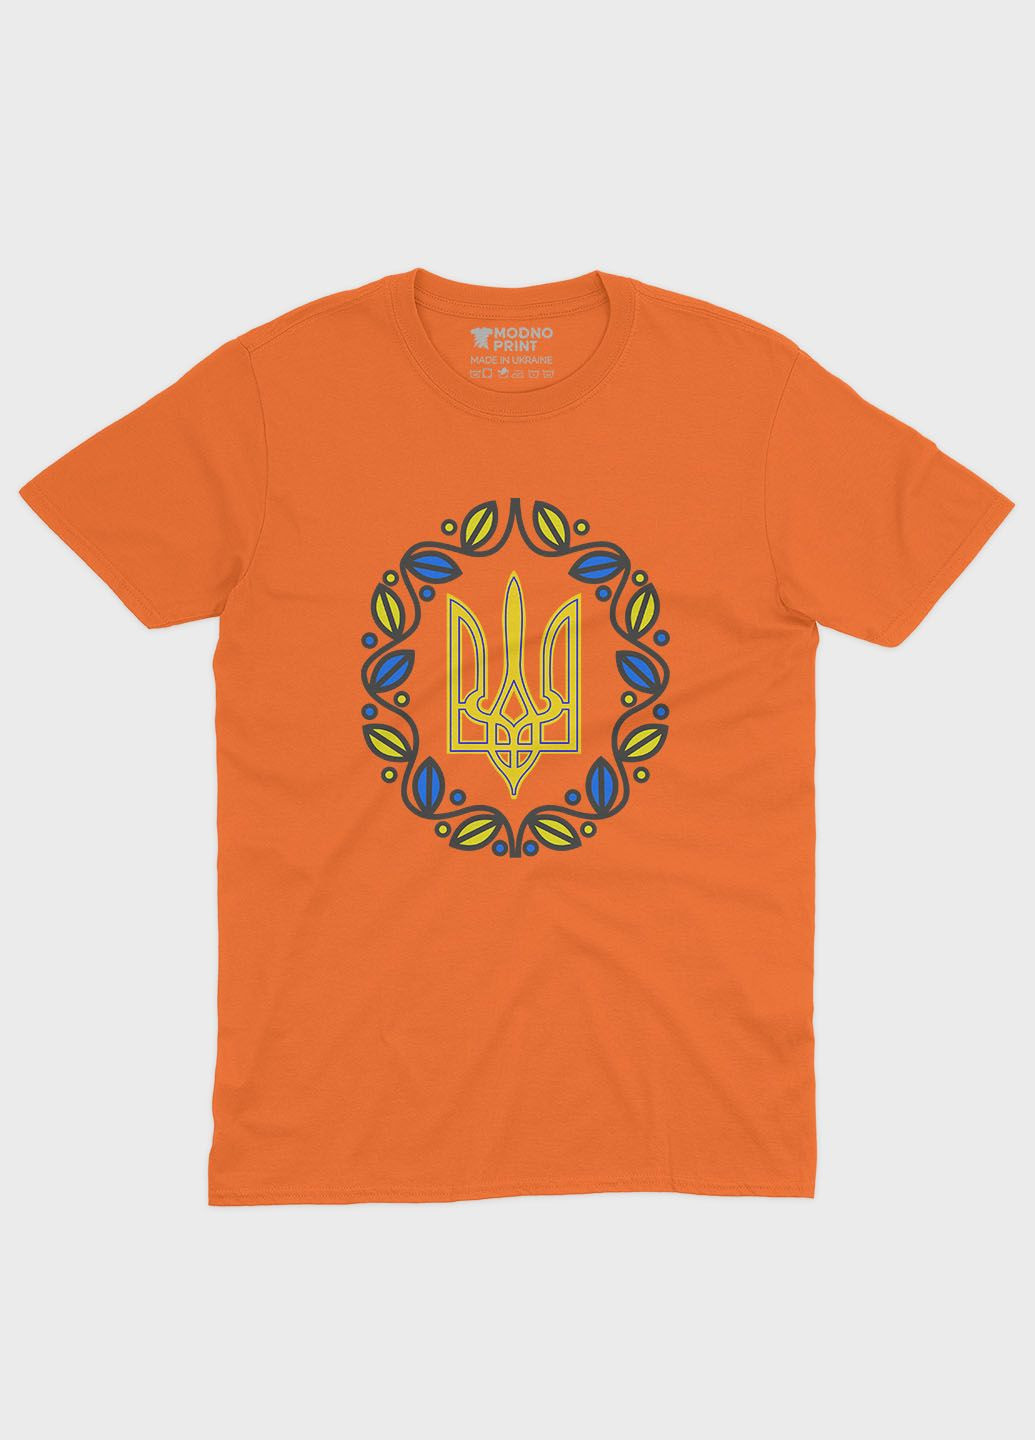 Оранжевая мужская футболка с патриотическим принтом гербтризуб (ts001-2-ora-005-1-052) Modno